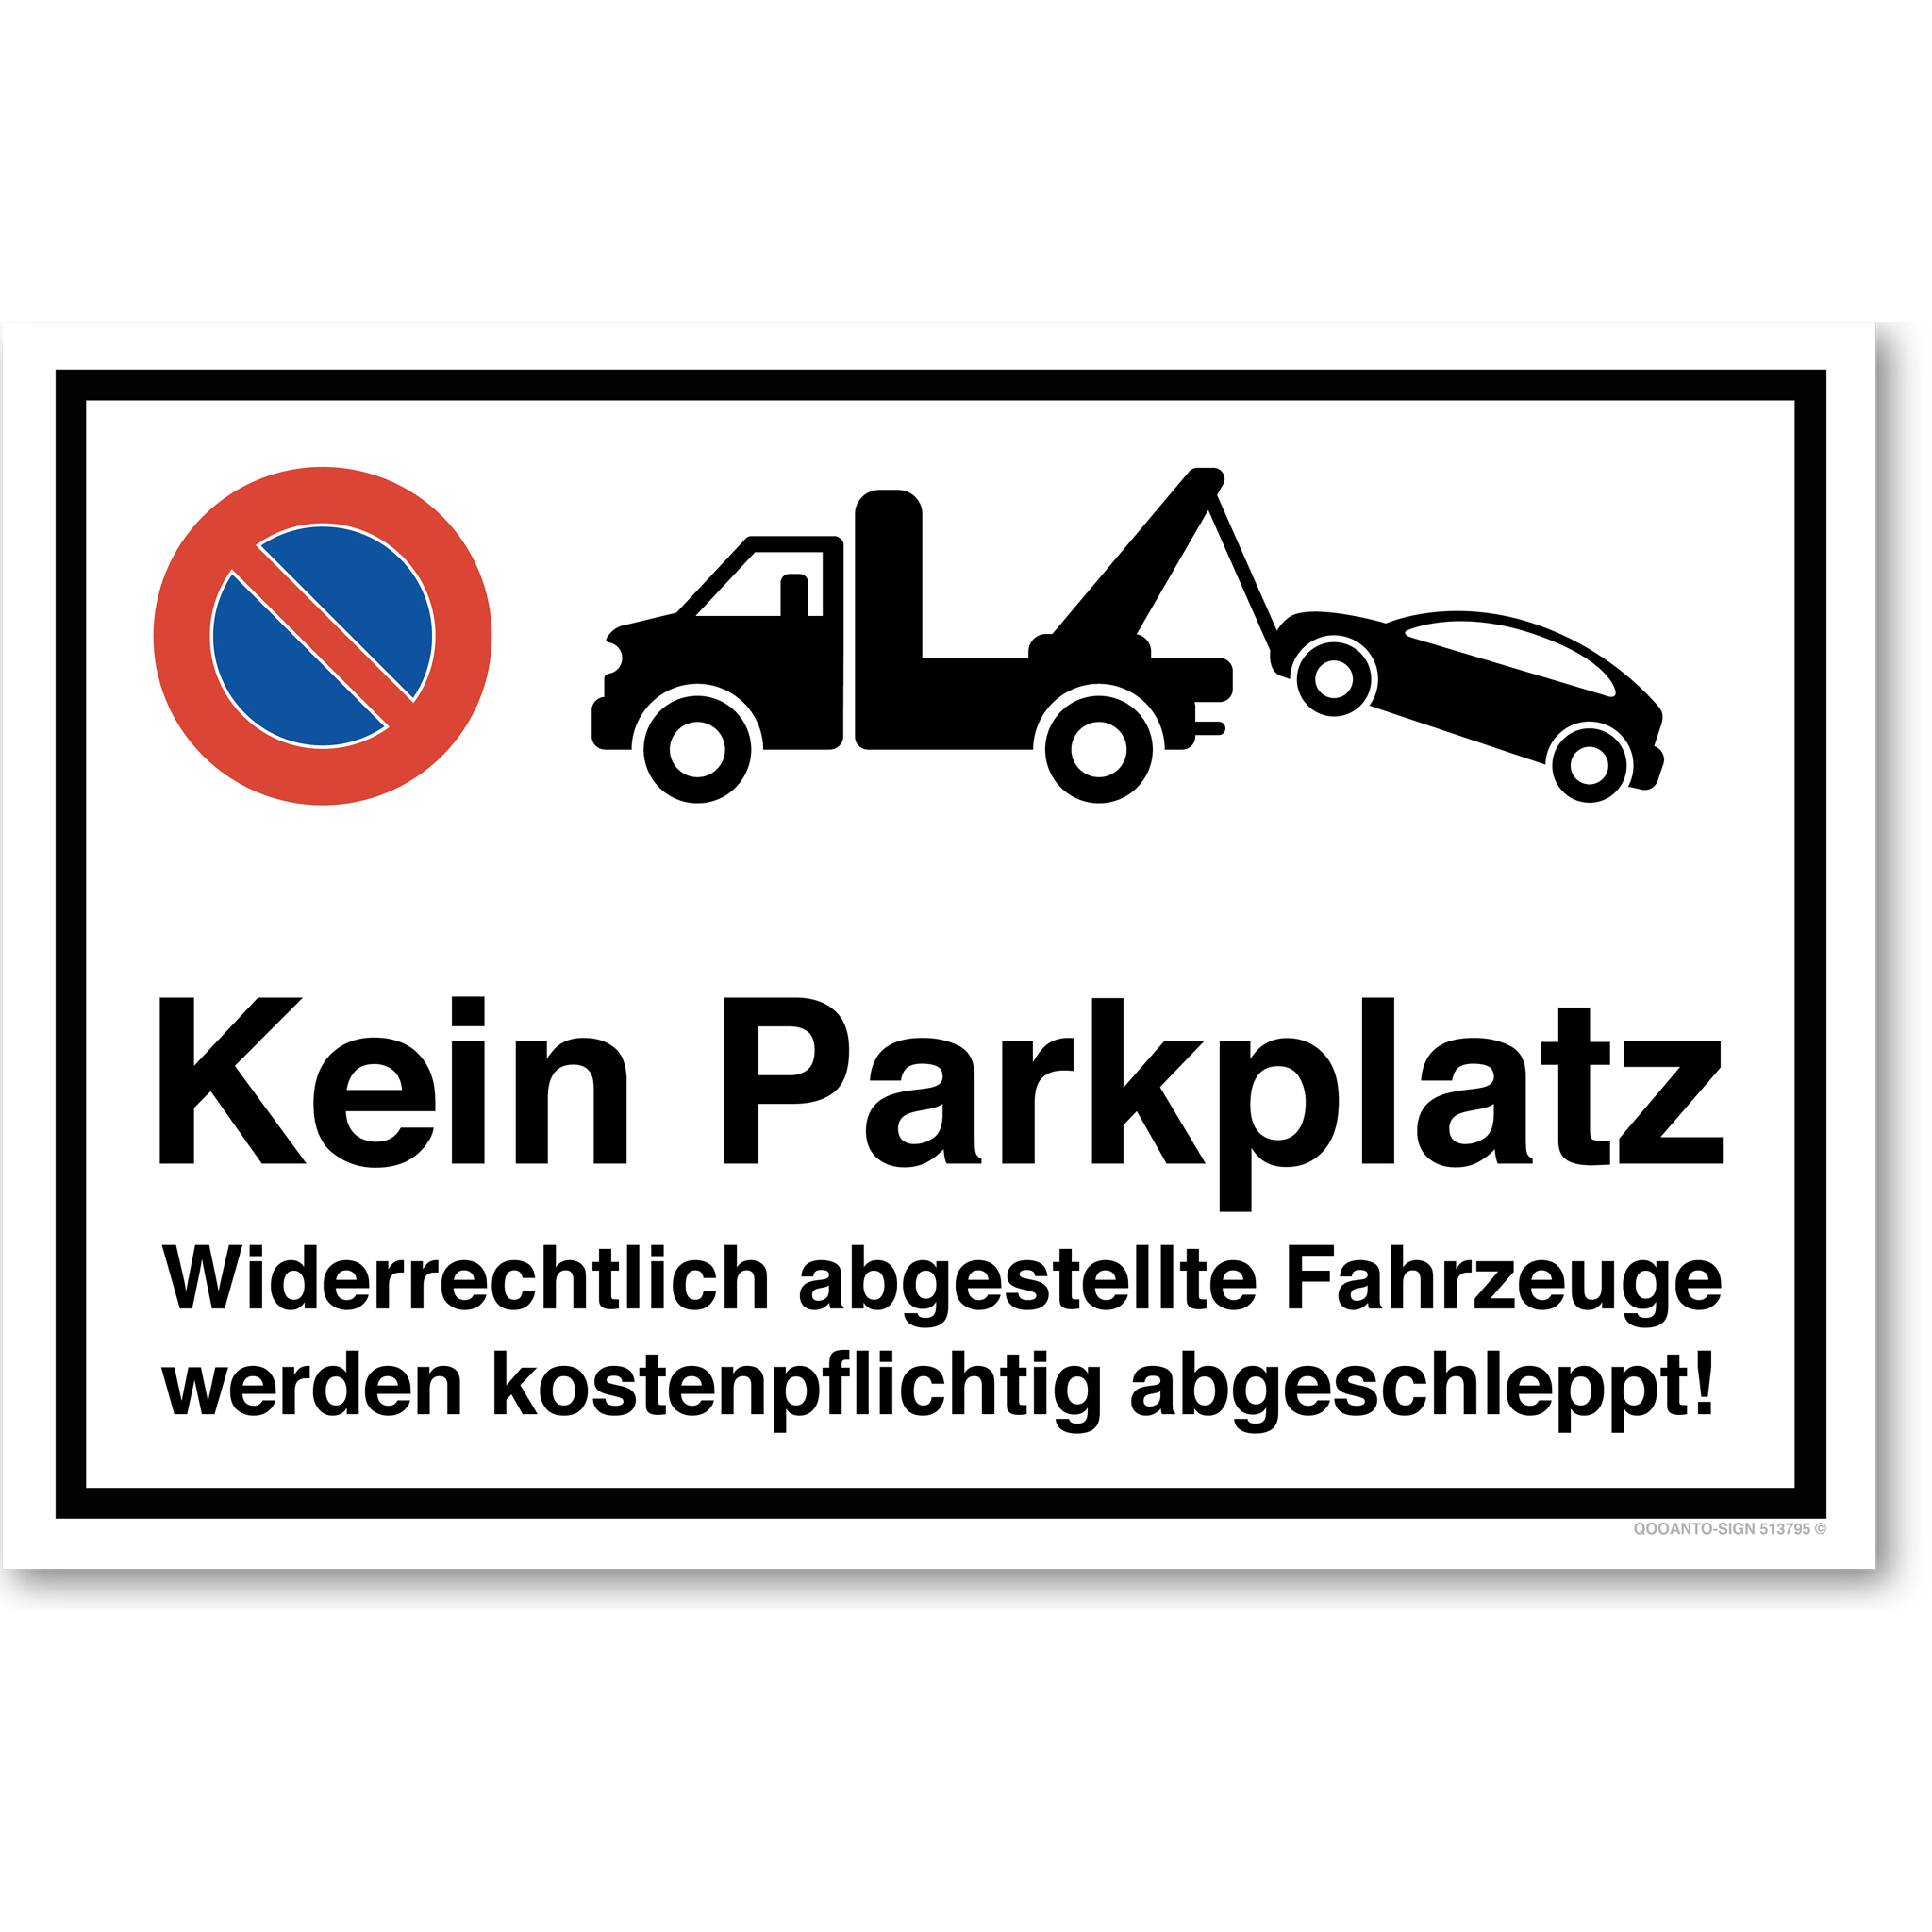 Kein Parkplatz - Widerrechtlich abgestellte Fahrzeuge werden kostenpflichtig abgeschleppt - Parkverbotsschild querformat